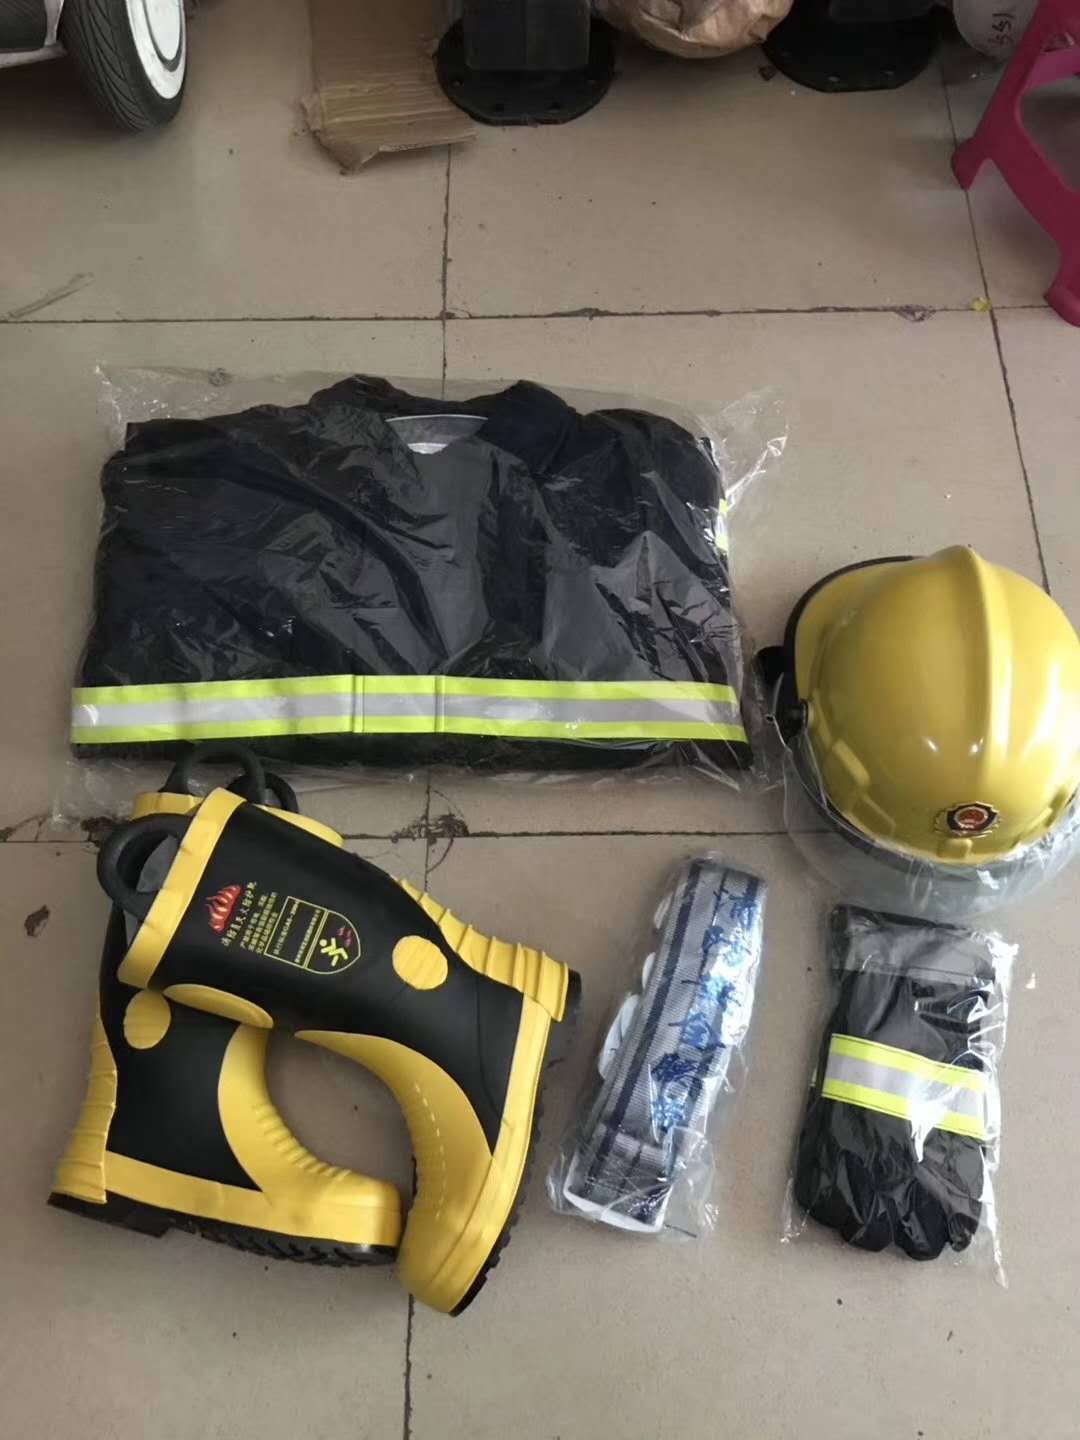 消防服